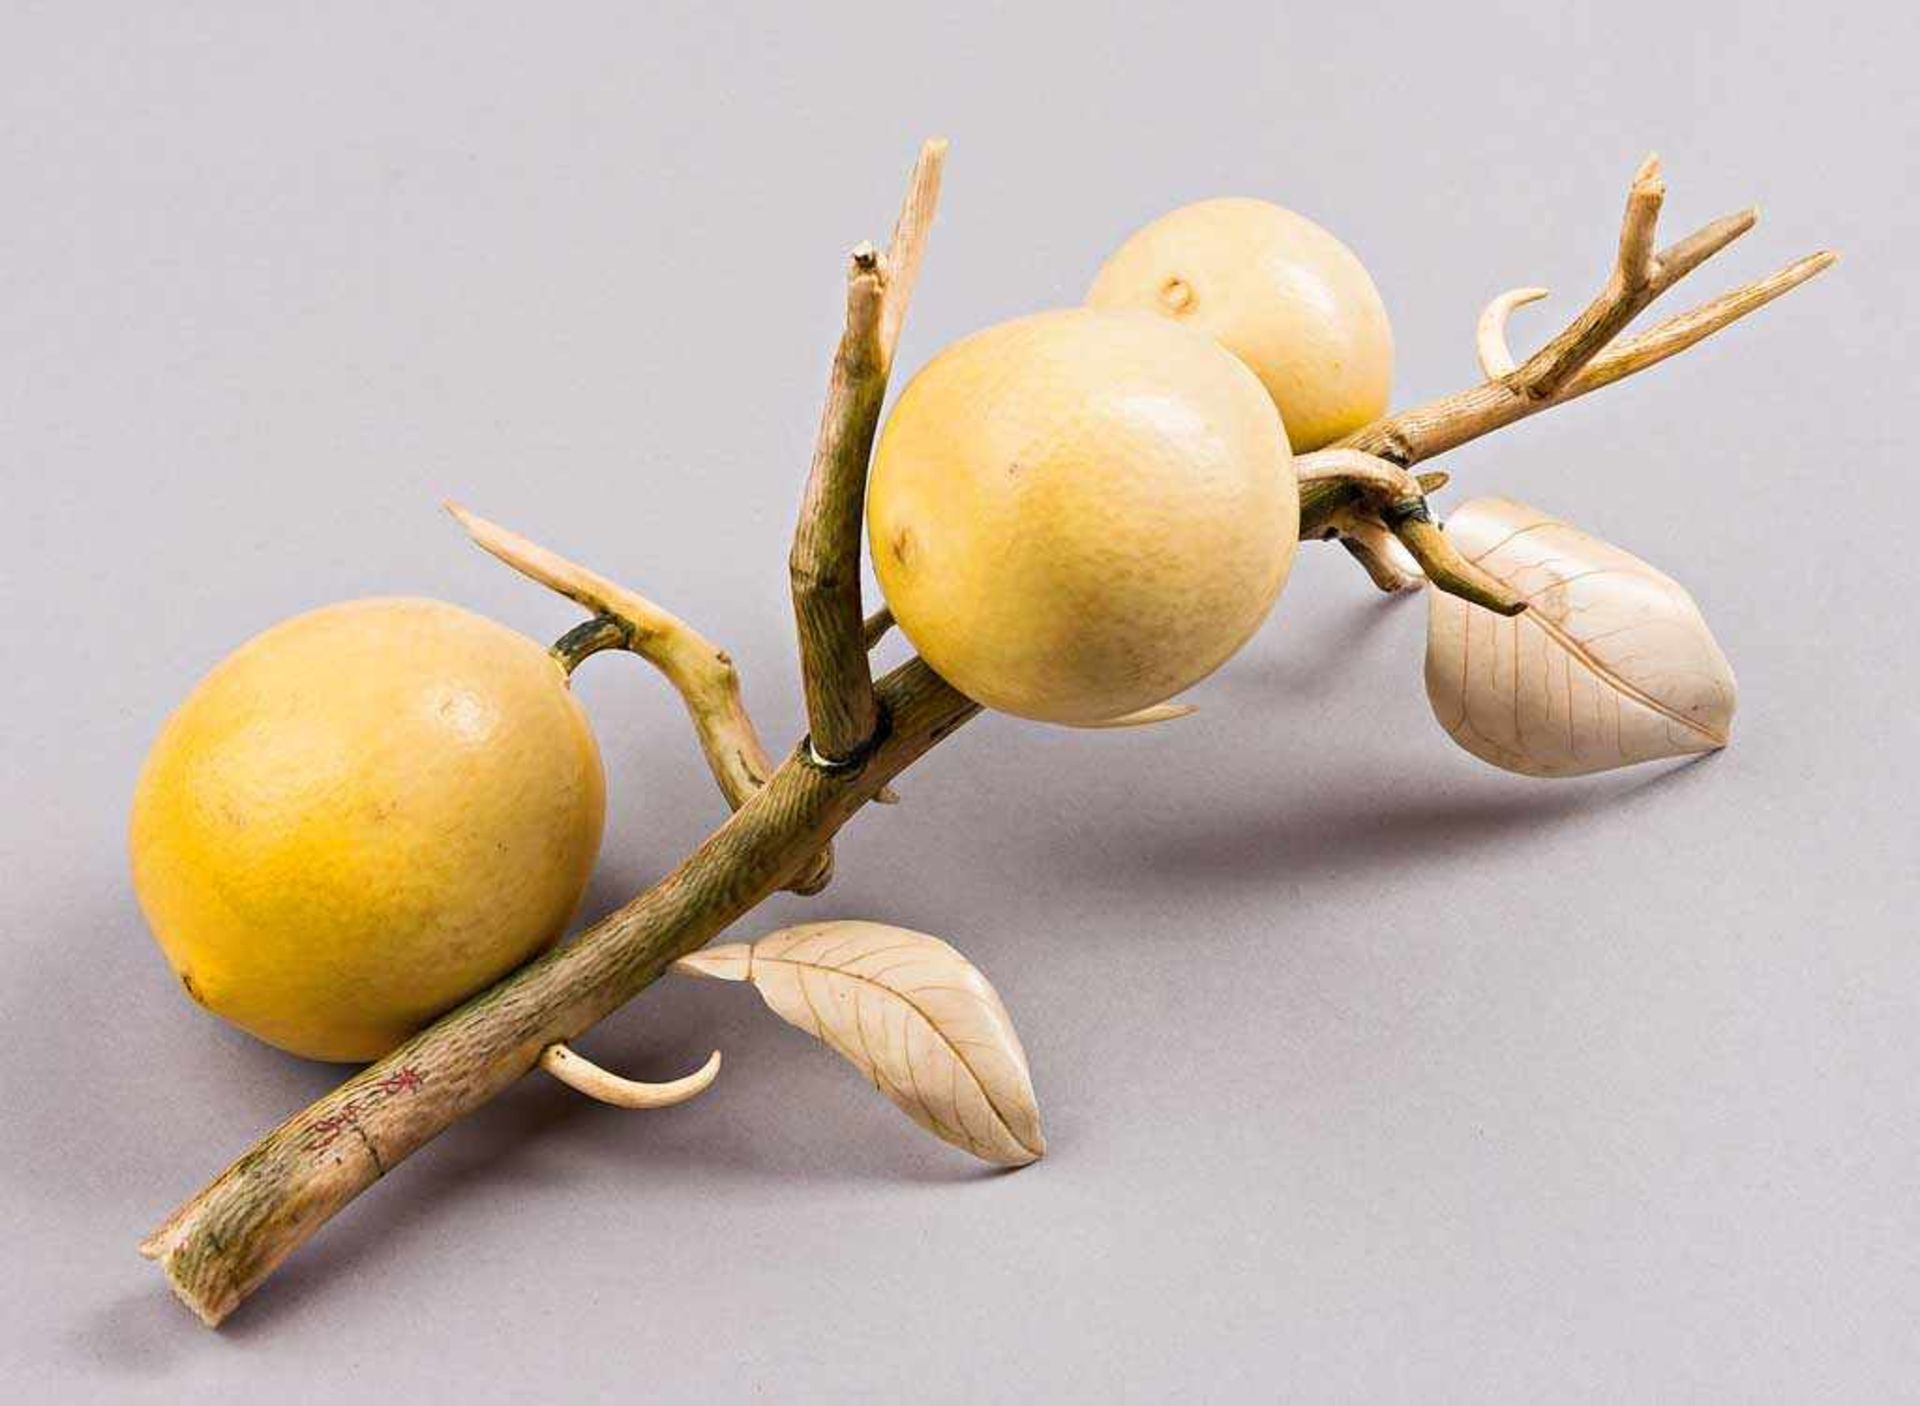 Zitronenzweig mit drei Früchten. Feine Elfenbeinschnitzerei. Japan, Meiji-Zeit Ende 19. Jh. L 28 cm.